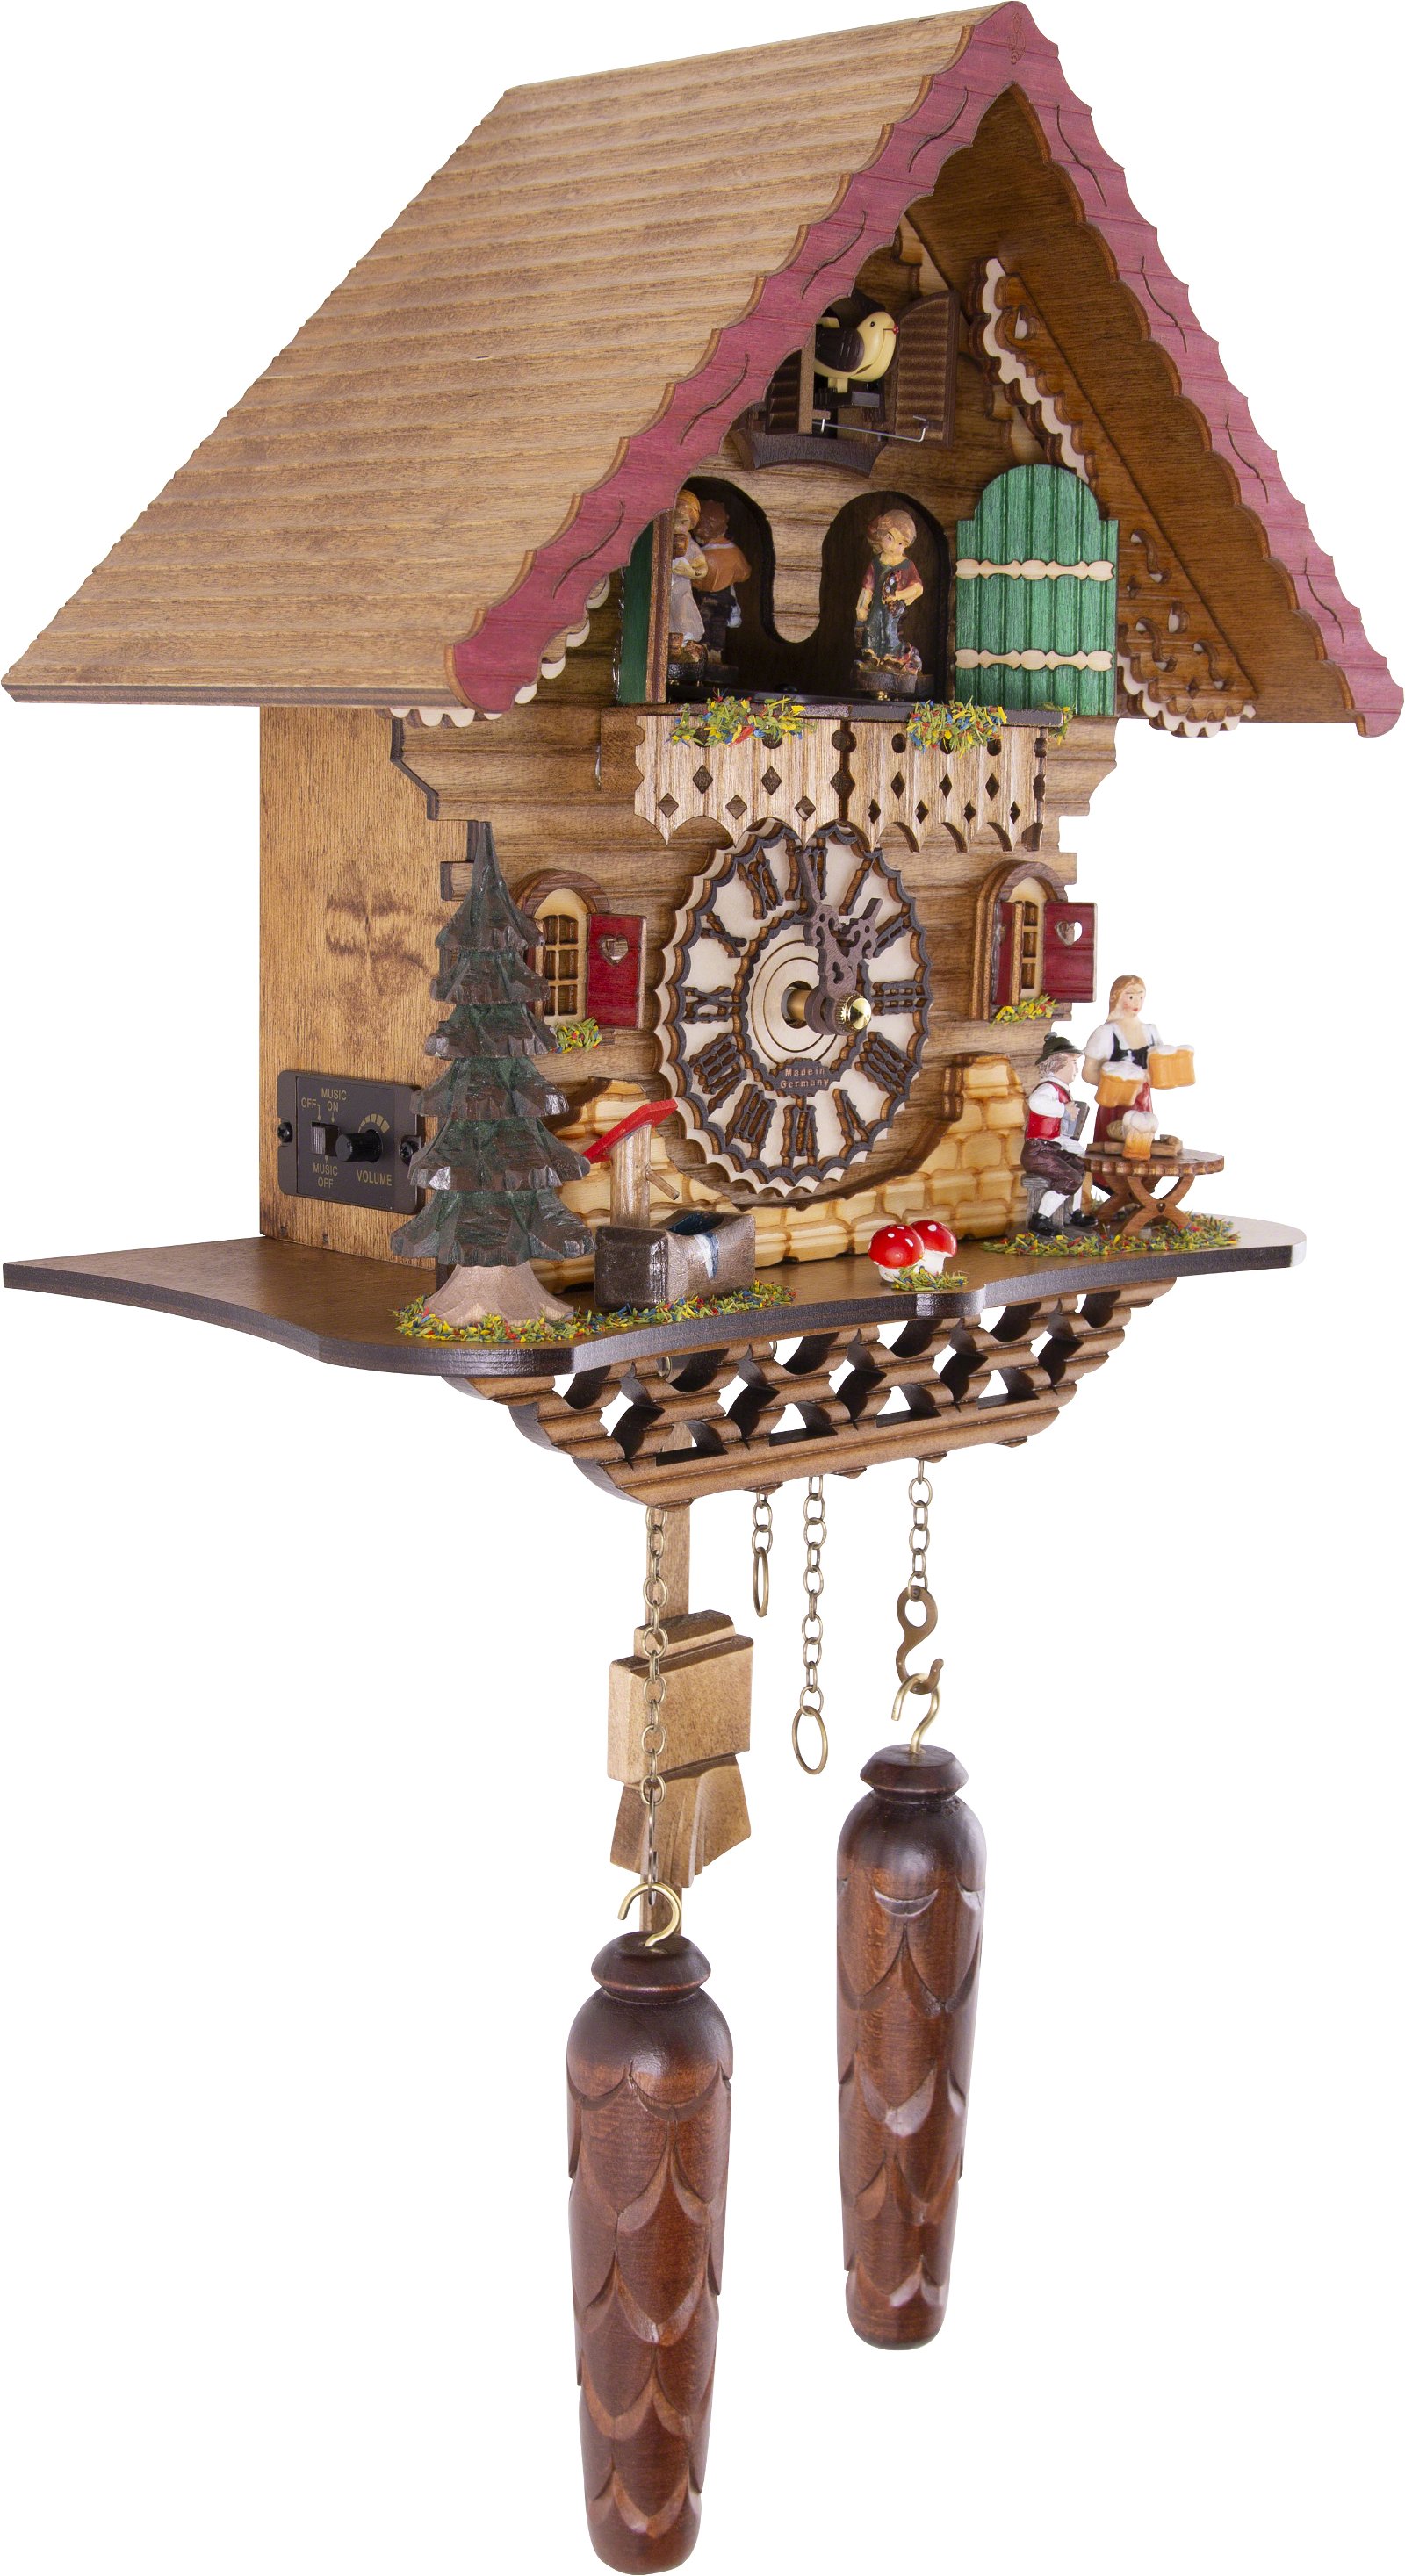 Kuckucksuhr Chalet-Stil Quarz-Uhrwerk 29cm von Trenkle Uhren